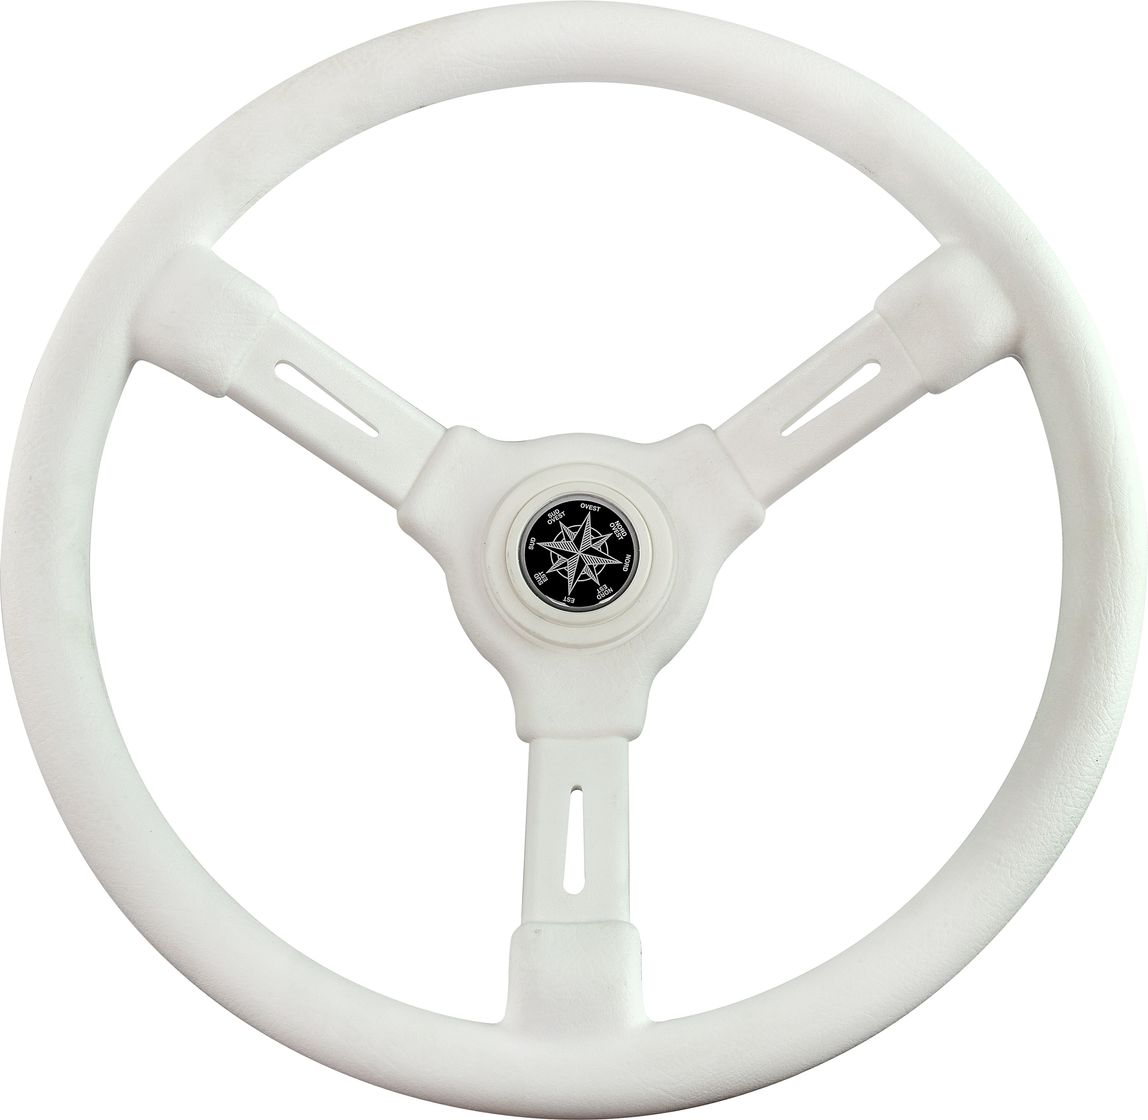 Рулевое колесо RIVIERA белый обод и спицы д. 350 мм VN8001-08 рулевое колесо matrix белый обод more 10016474